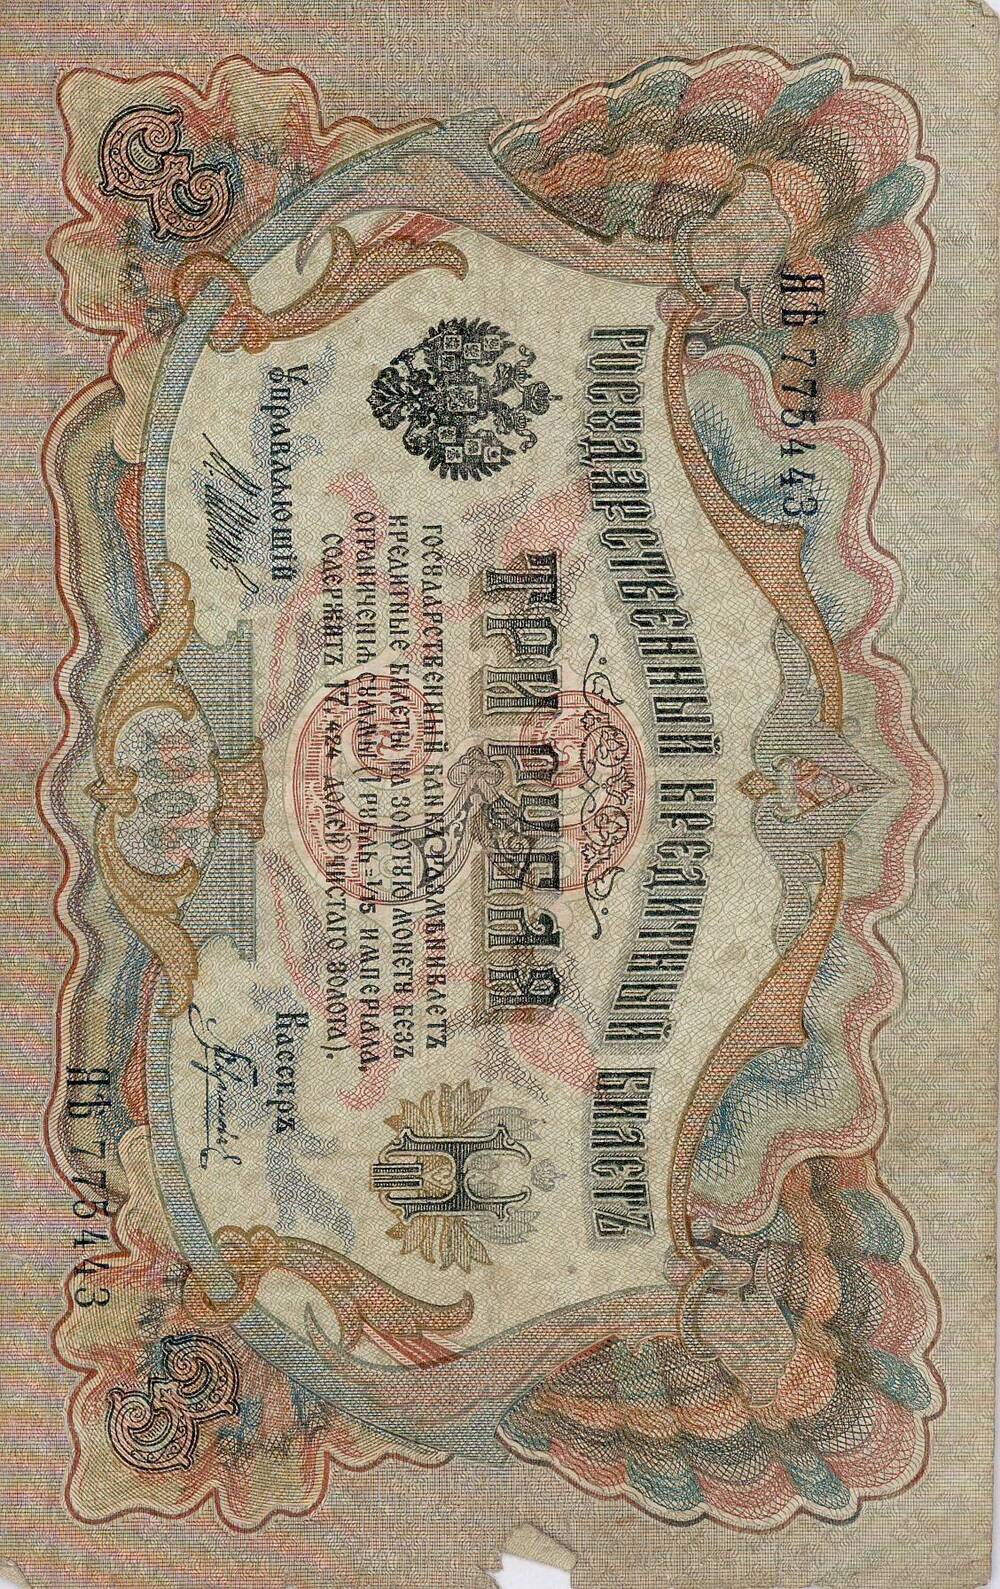 Билет государственный кредитный ЯЪ № 775443 номинал 3 рубля. 1905г